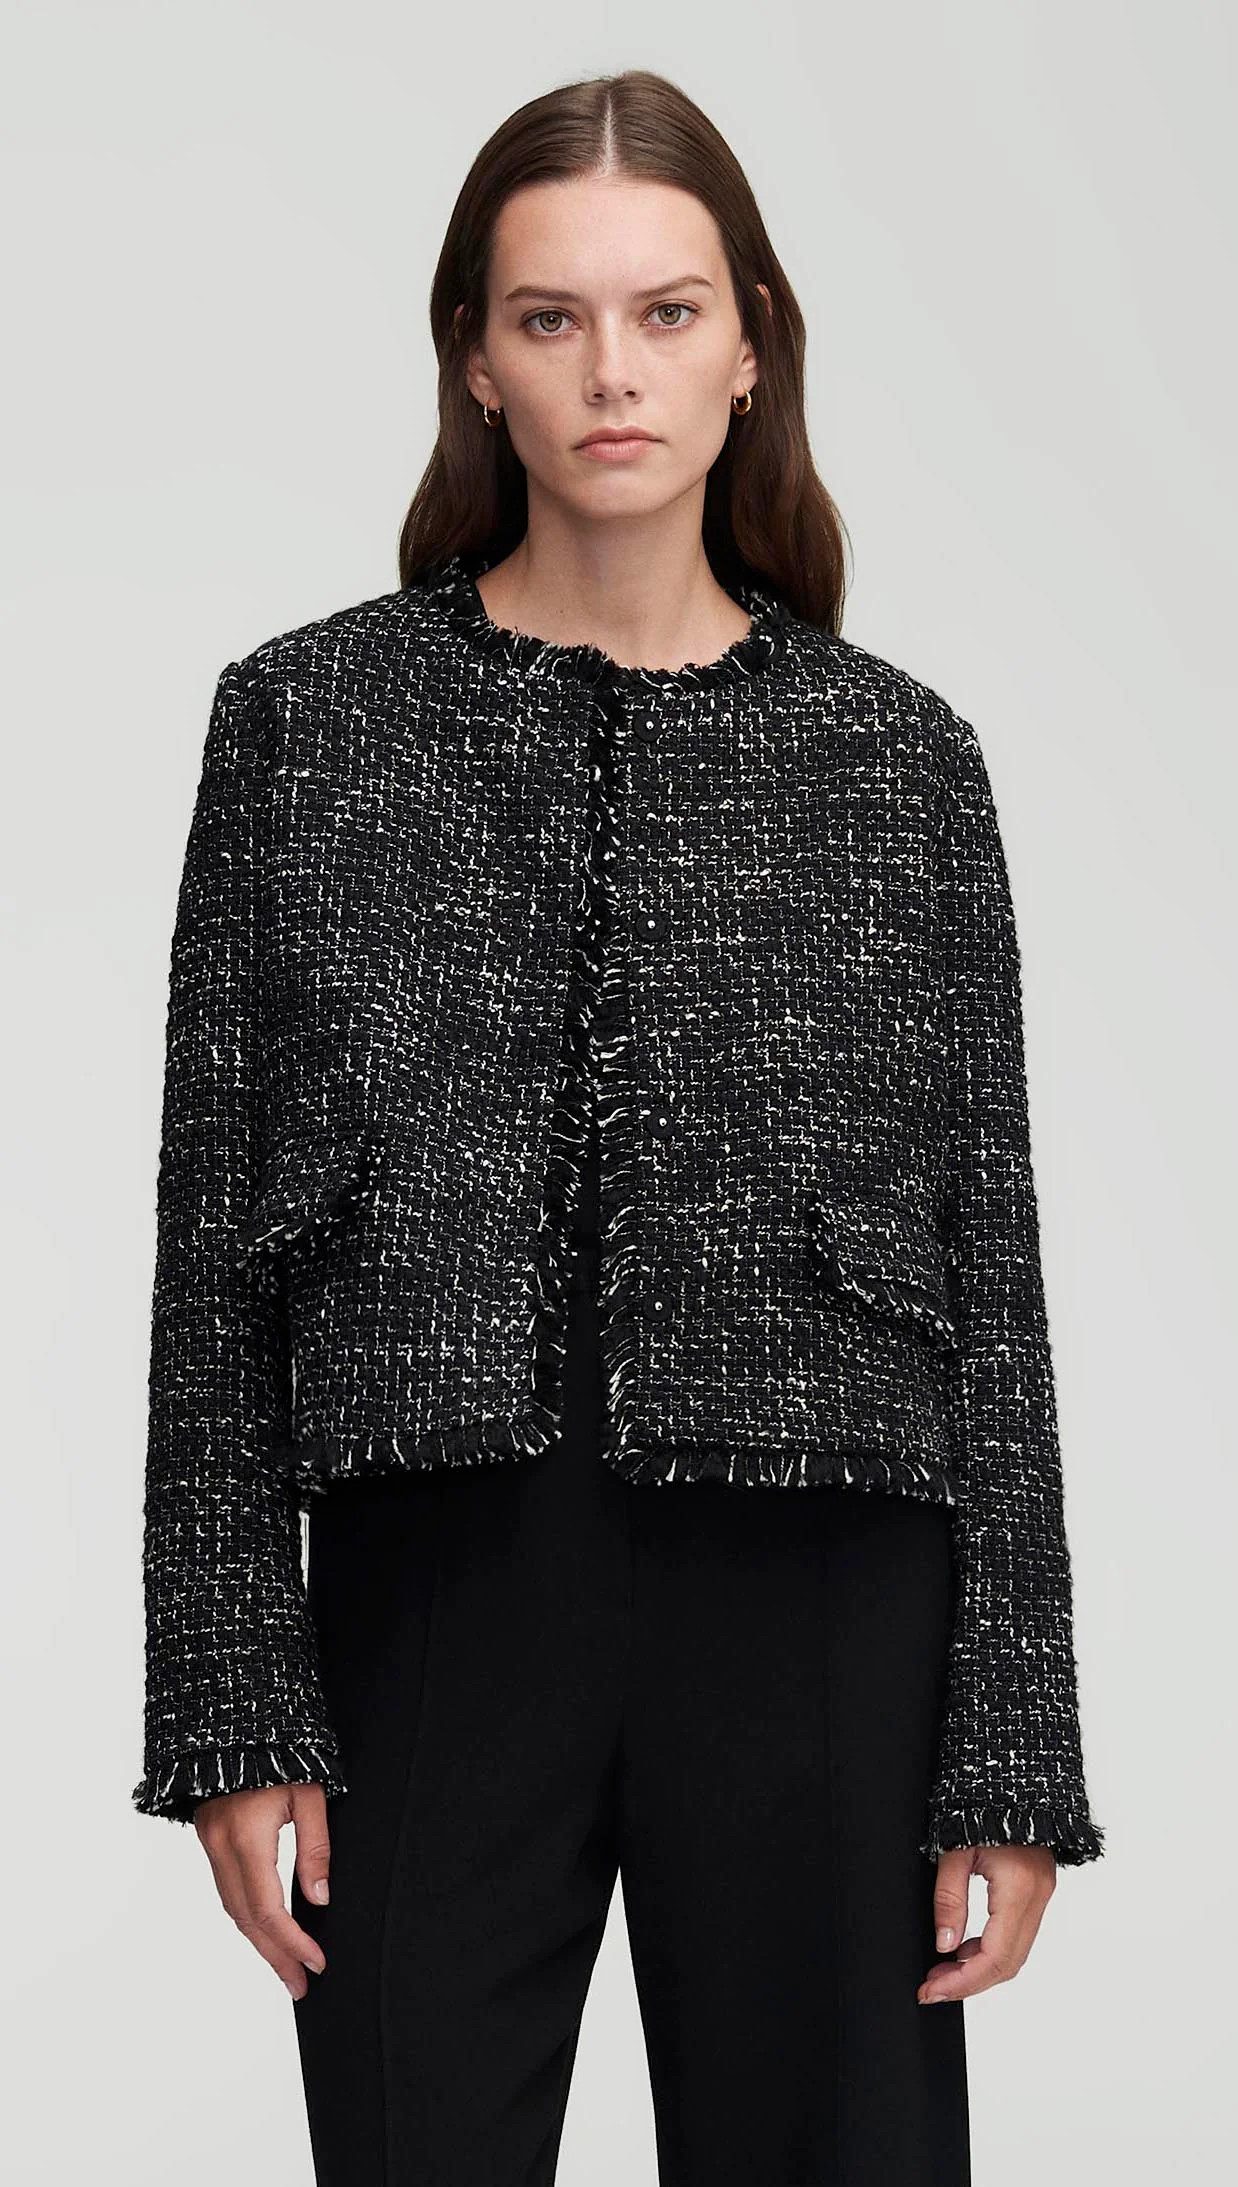 Argent: Classic Jacket in Tweed | Women's Blazers | Argent | Argent